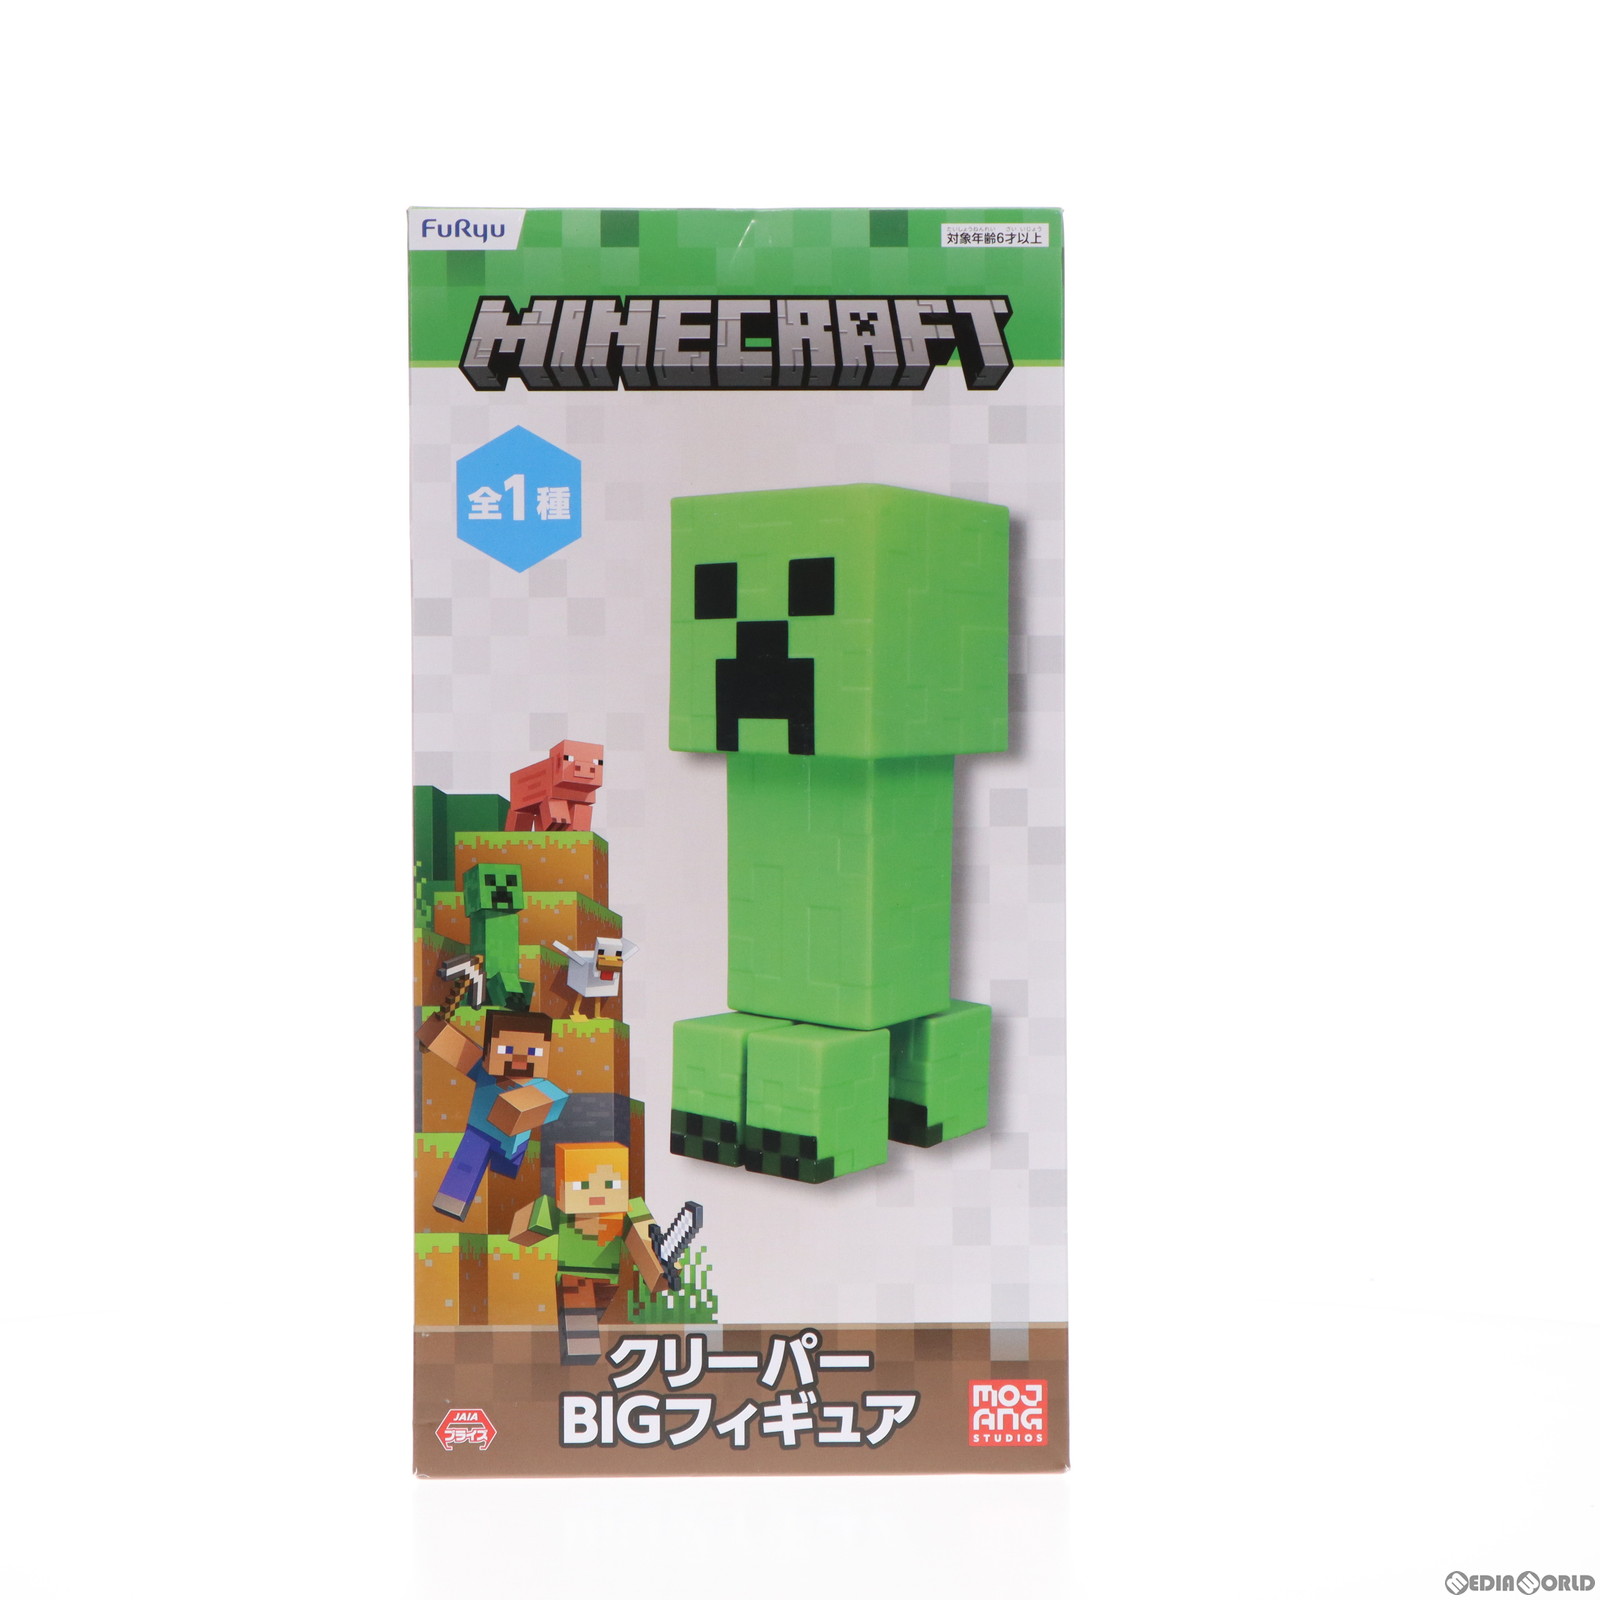 【中古即納】[FIG]クリーパー BIGフィギュア Minecraft(マインクラフト) プライズ(AMU-PRZ14893) フリュー(20230531)